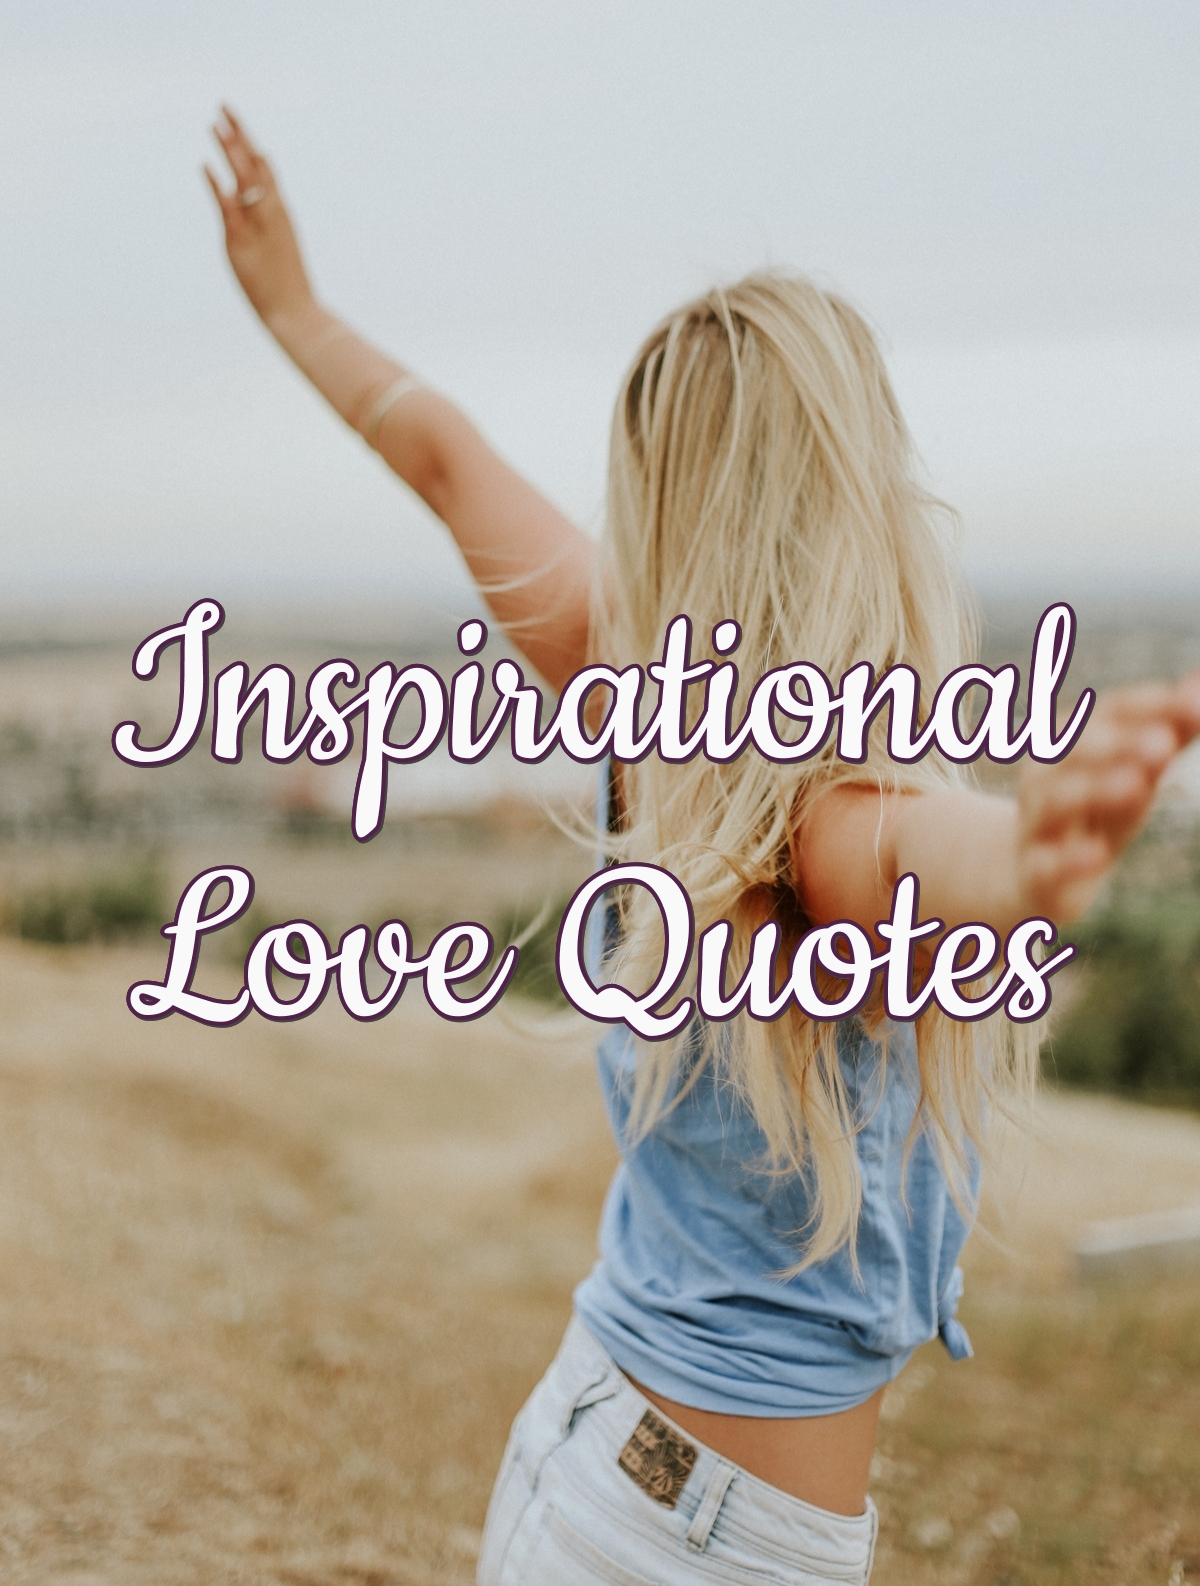 Inspirational Love Quotes | PureLoveQuotes